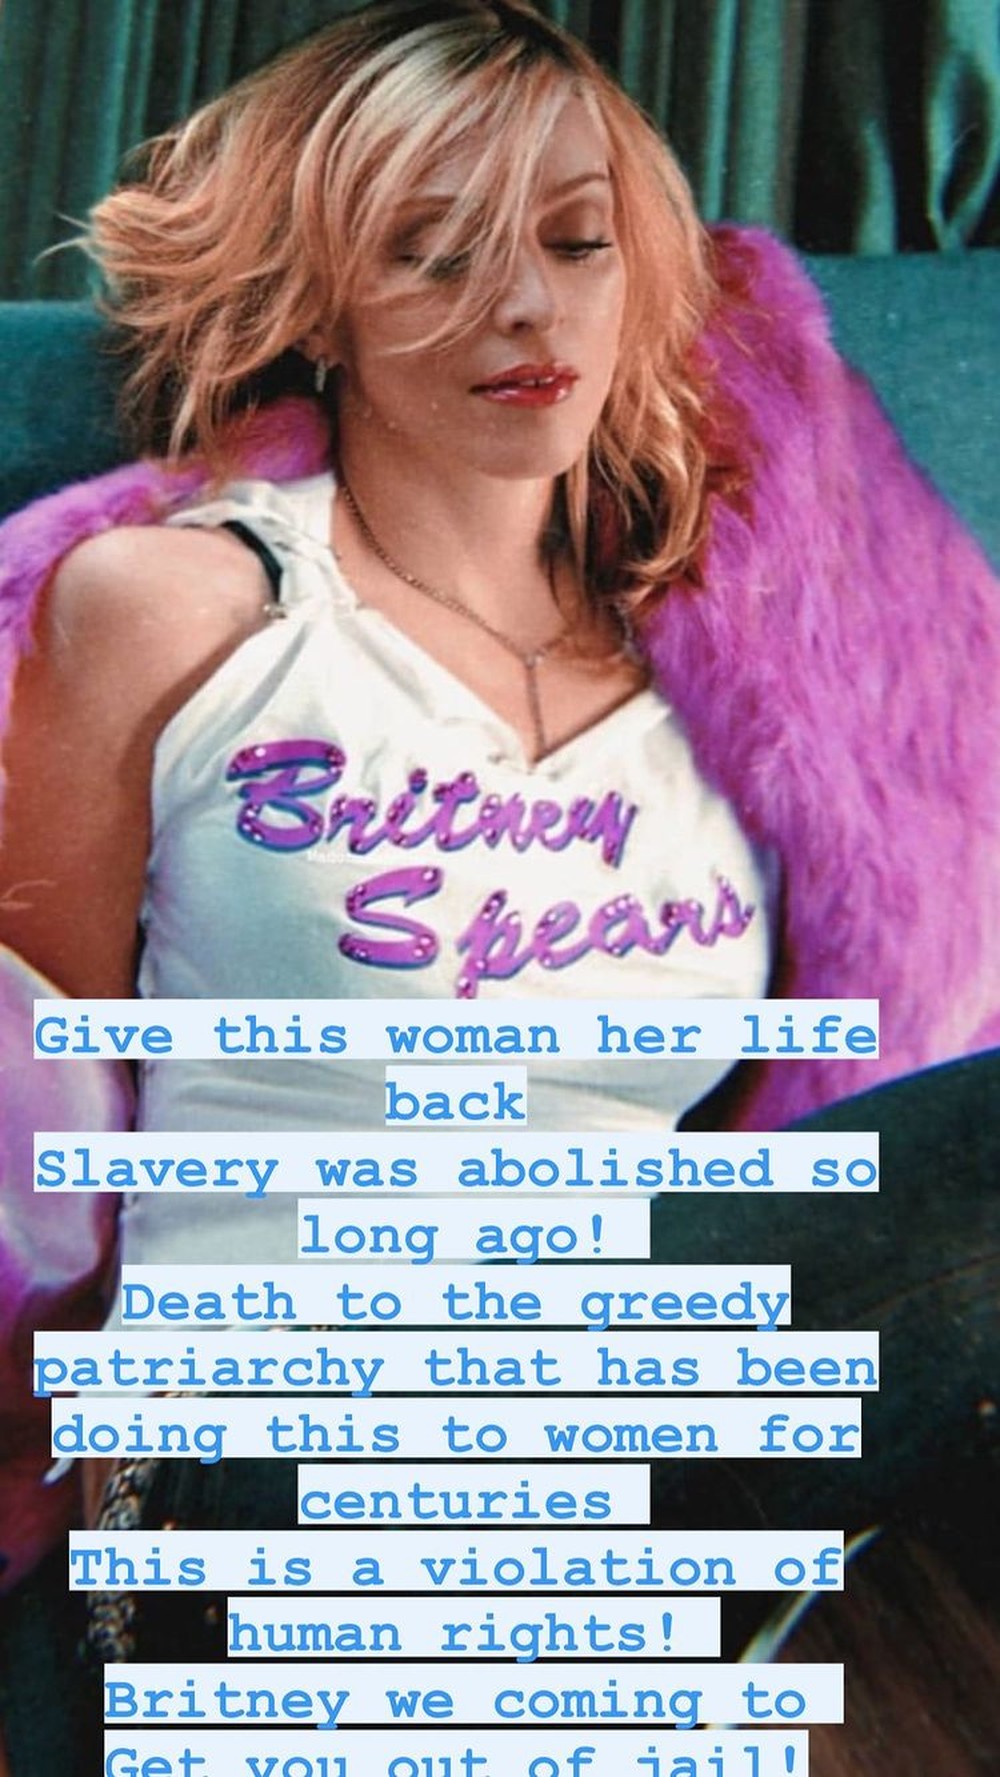 Reprodução do texto publicado por Madonna em defesa de Britney Spears